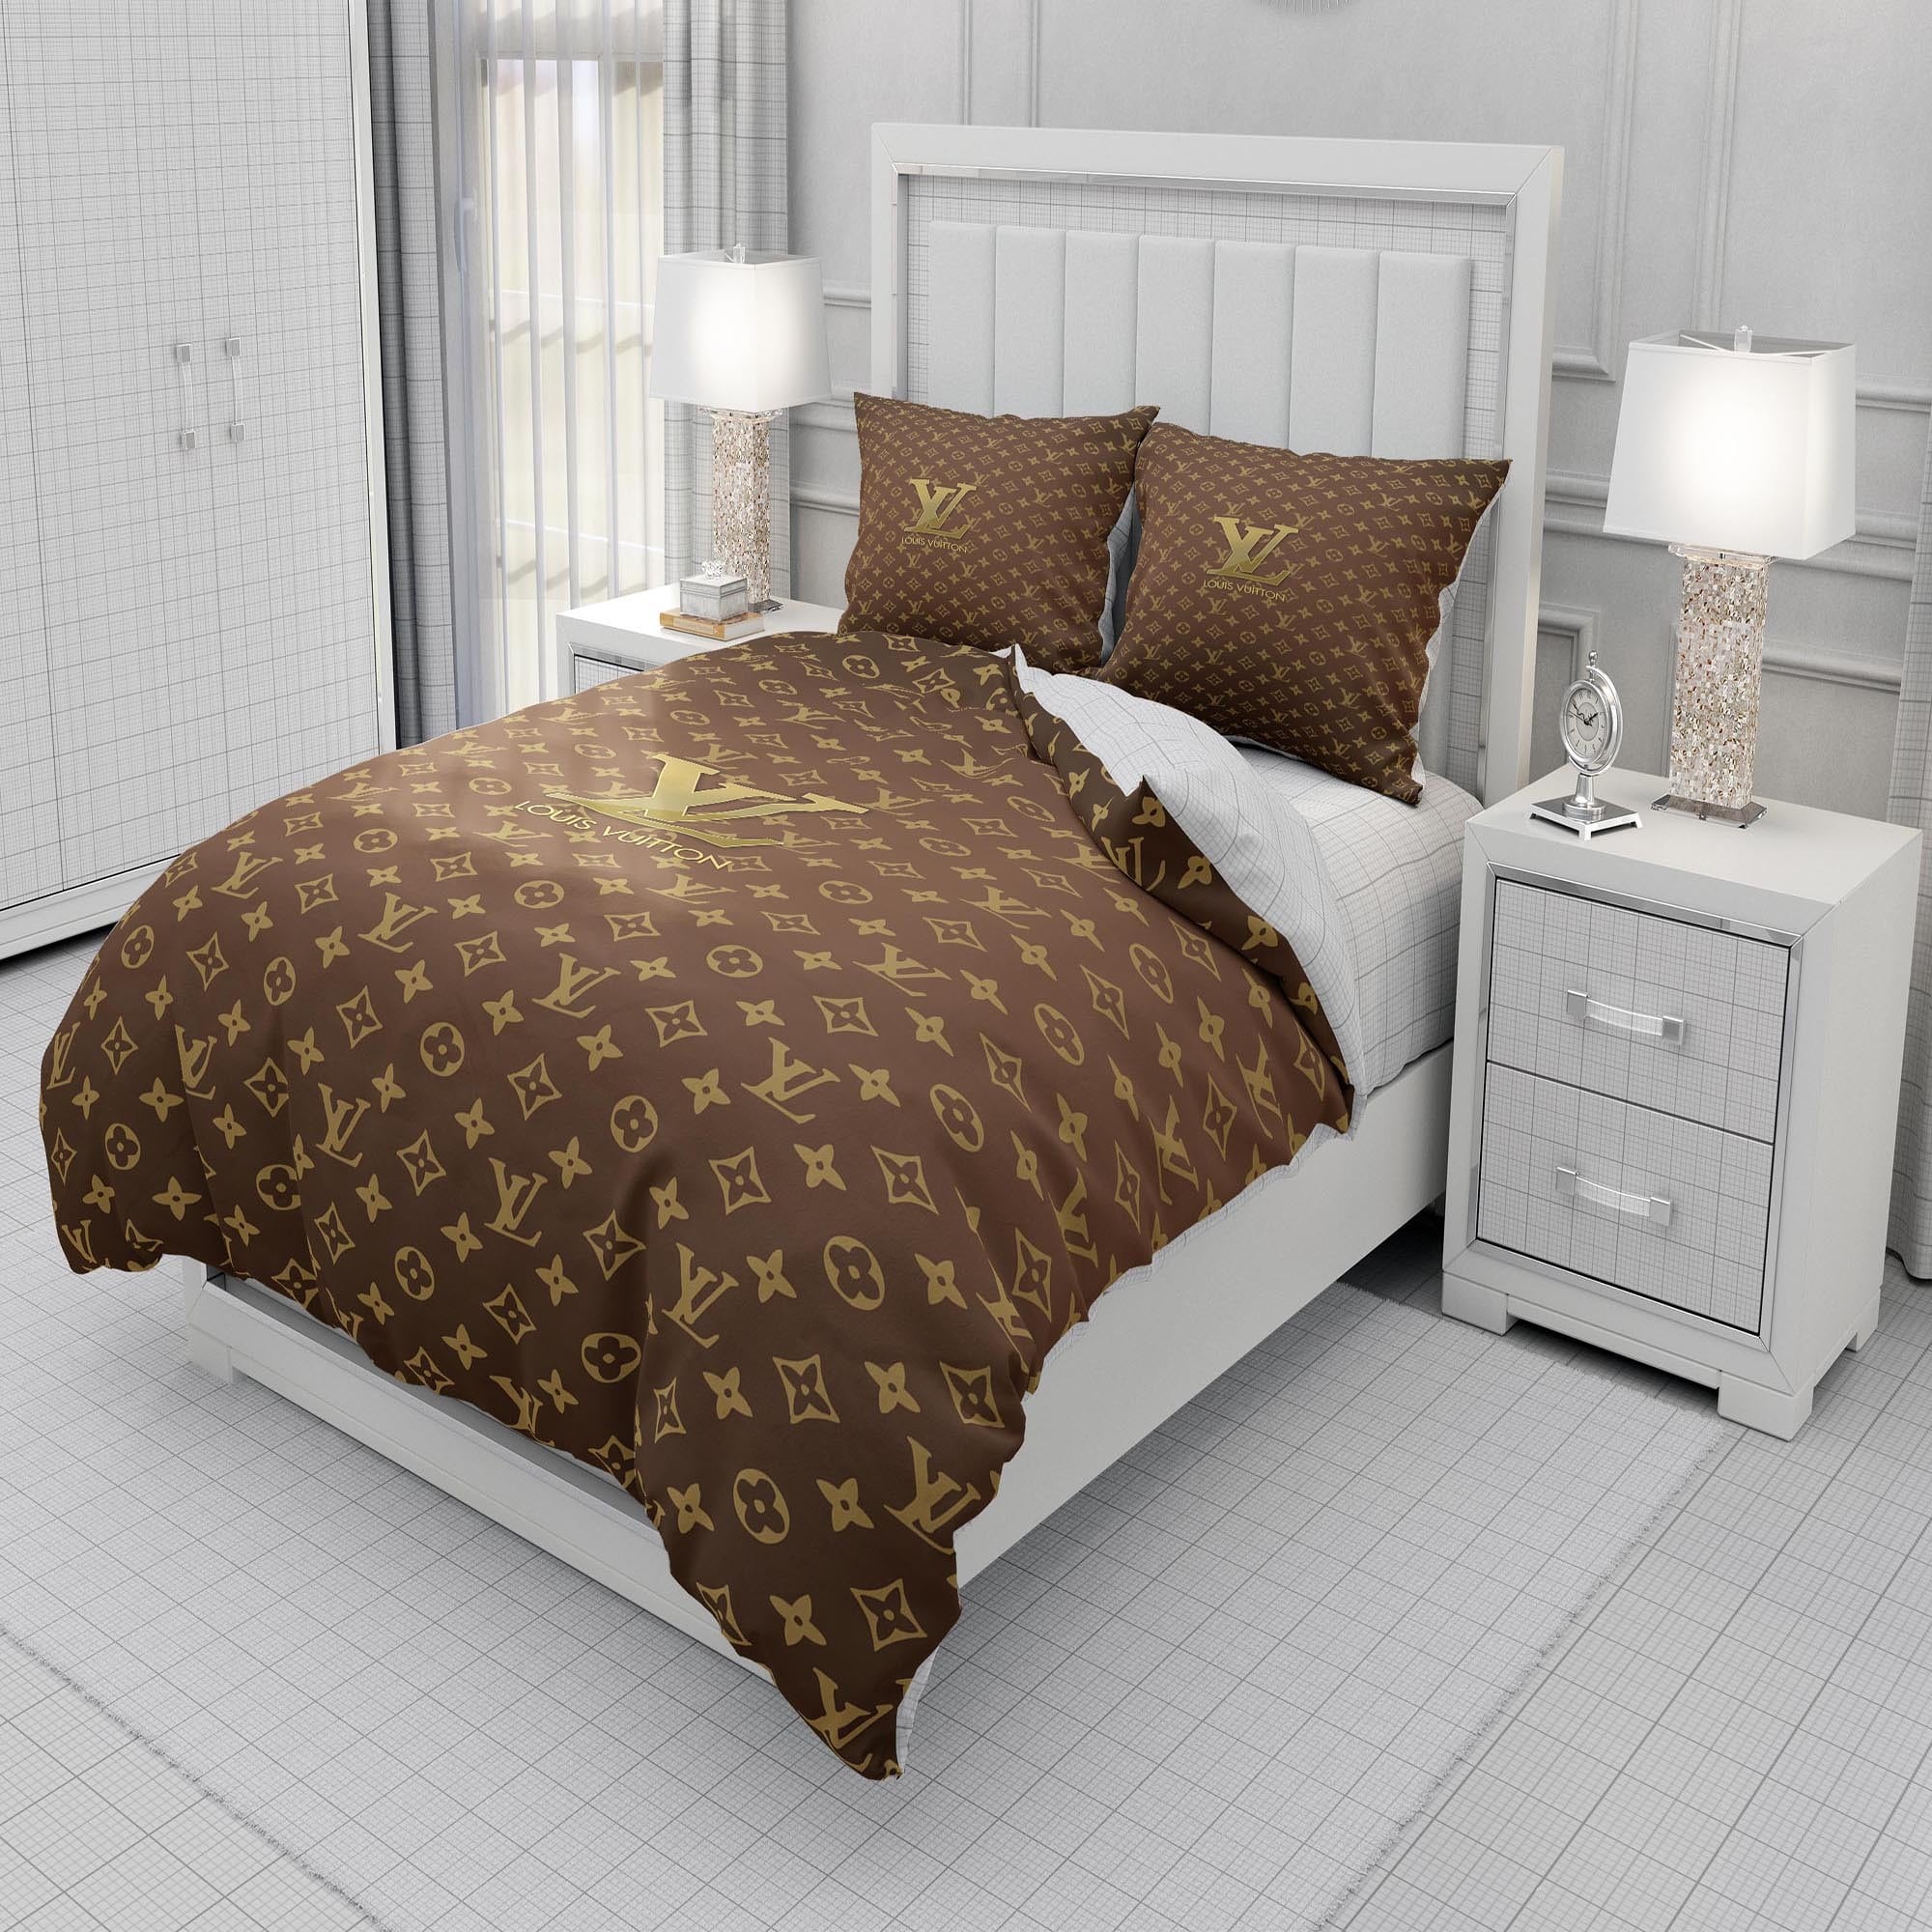 Buy Black Veinstone And Gold Louis Vuitton Bedding Sets Bed Sets, Bedroom  Sets, Comforter Sets, Duvet Cover, Bed… in 2023